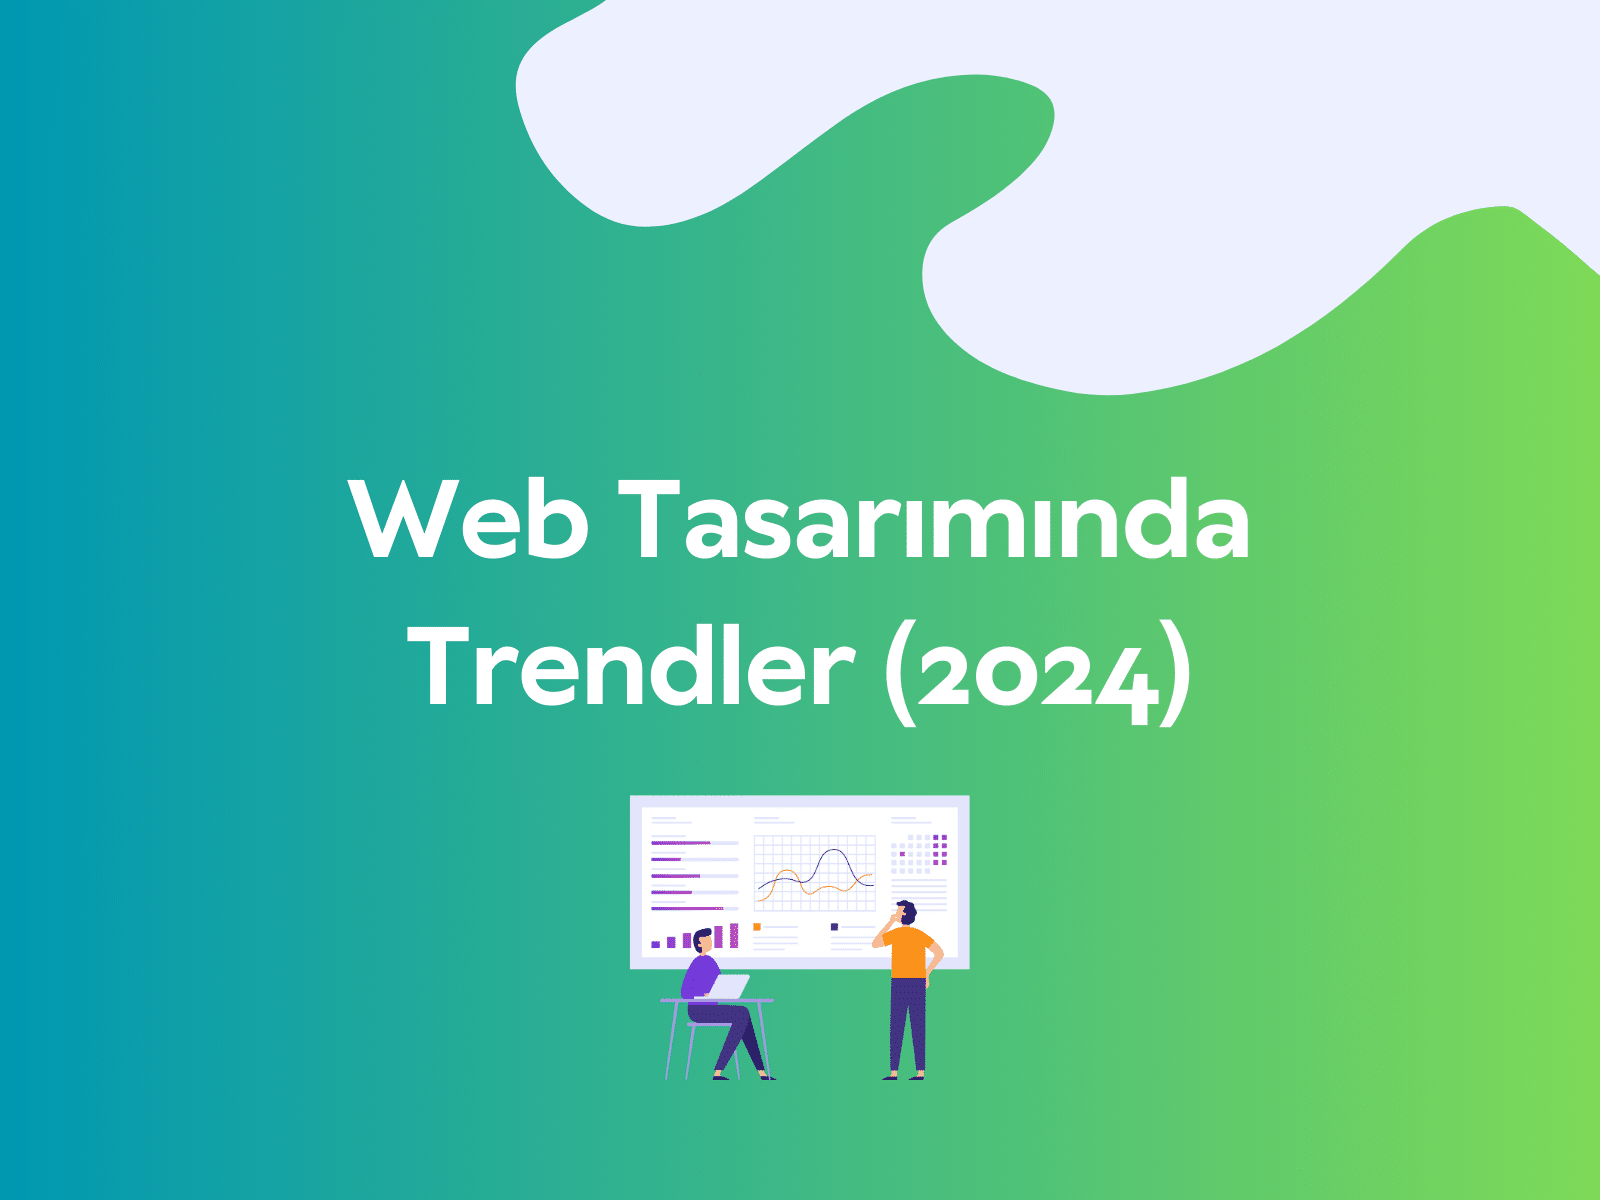 Web Tasarımında Trendler (2024)